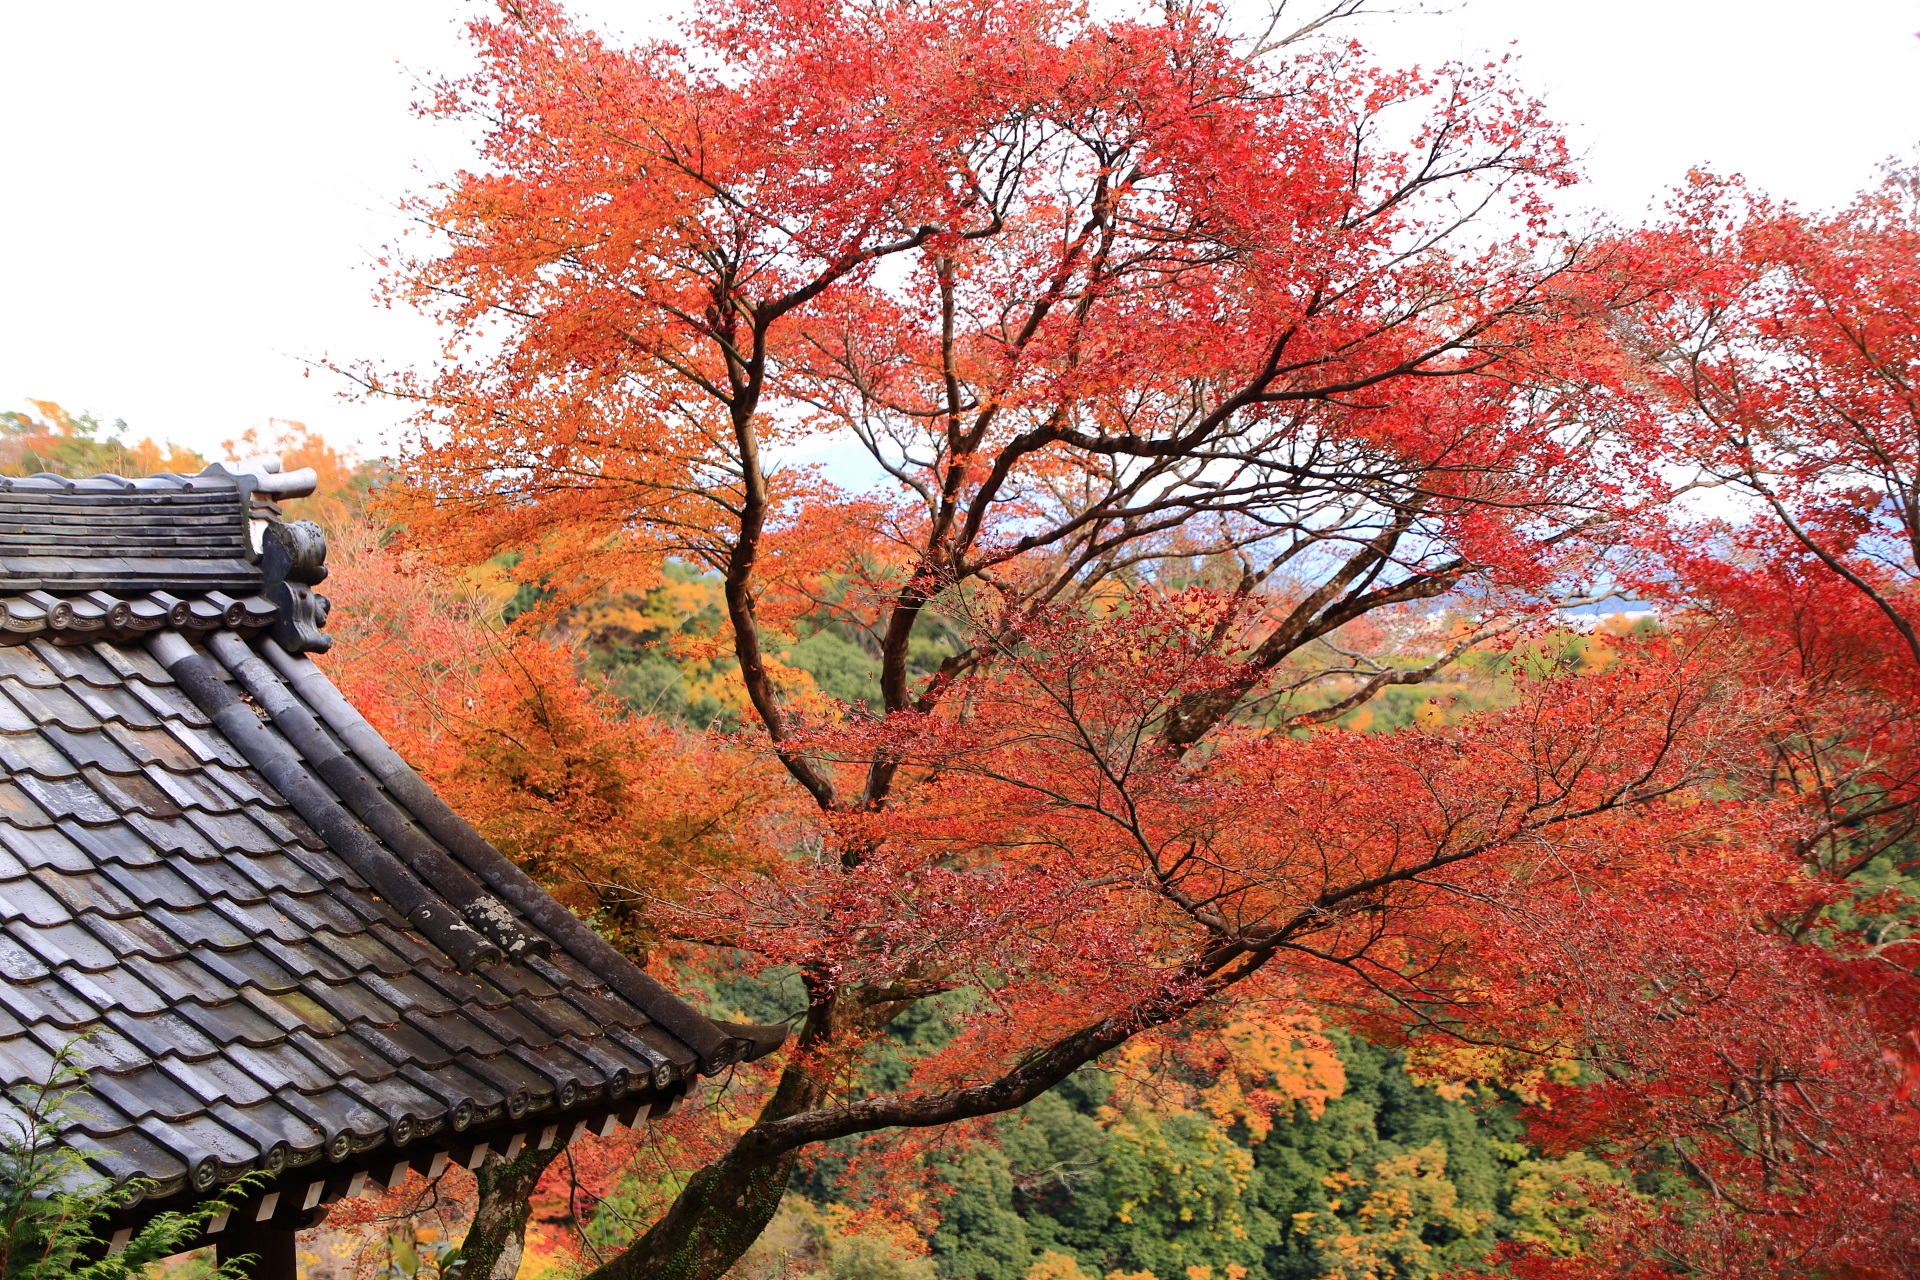 大悲閣千光寺の鐘楼や秋の山を彩る色とりどりの紅葉